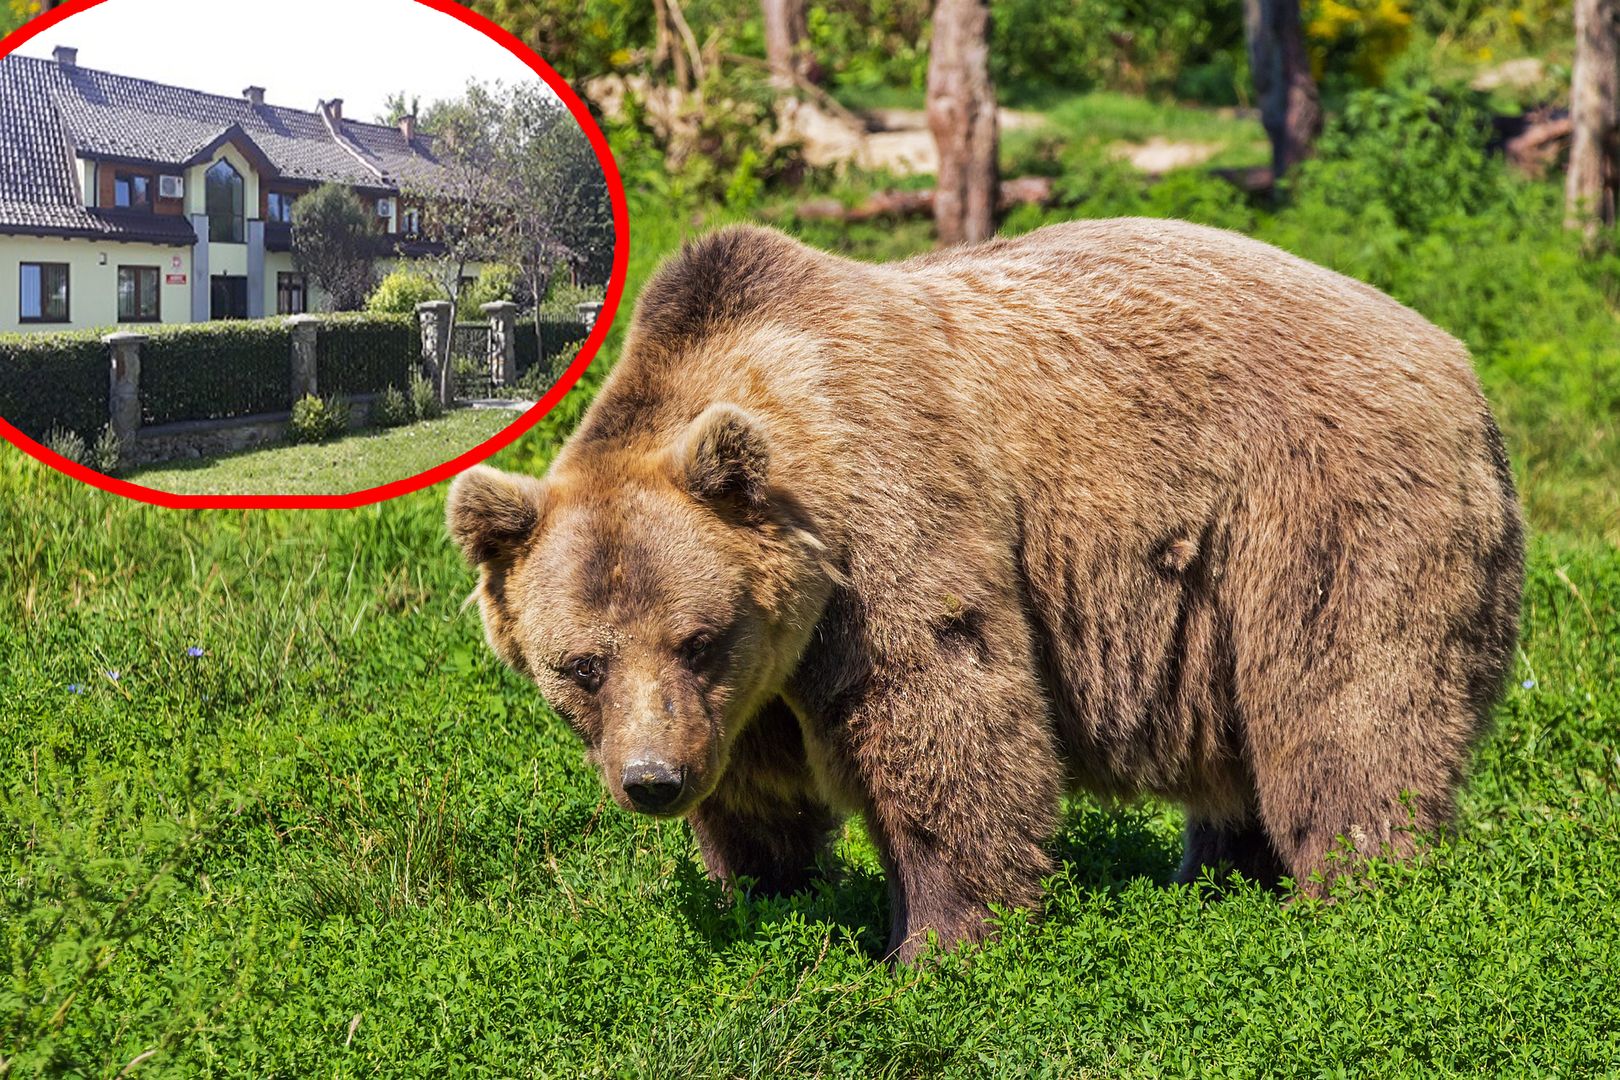 Leśnicy aktywistom zaatakowanym przez niedźwiedzia. "To nadinterpretacja"